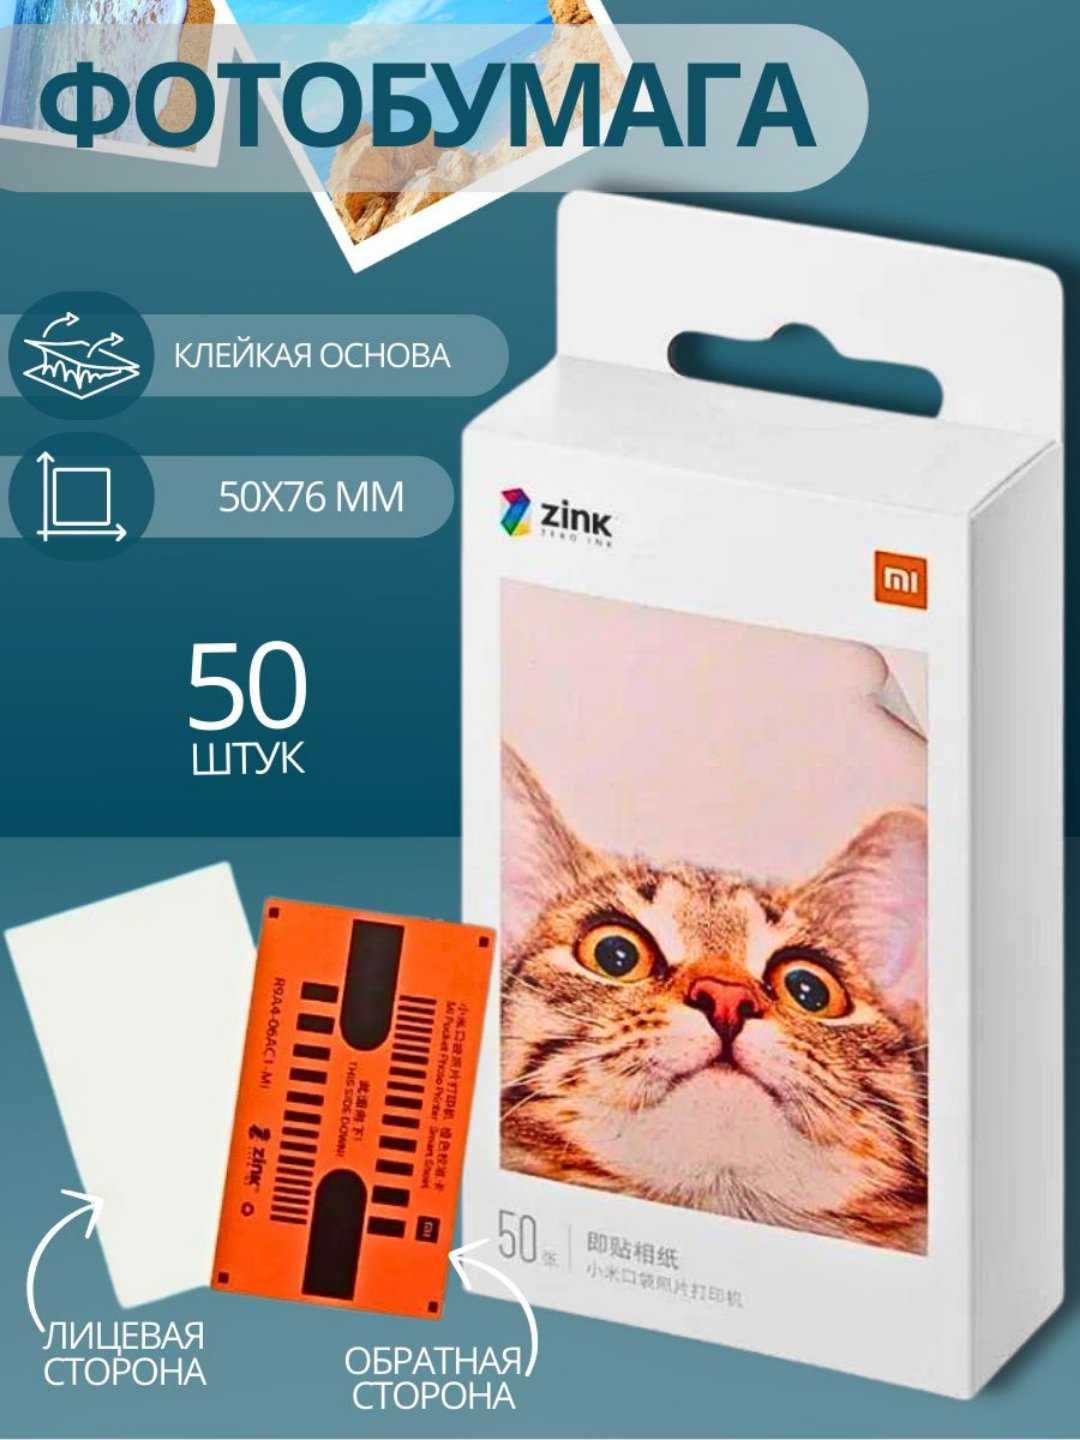 Фотопринтер Xiaomi Mijia AR ZINK цветной, фотобумага 50 шт